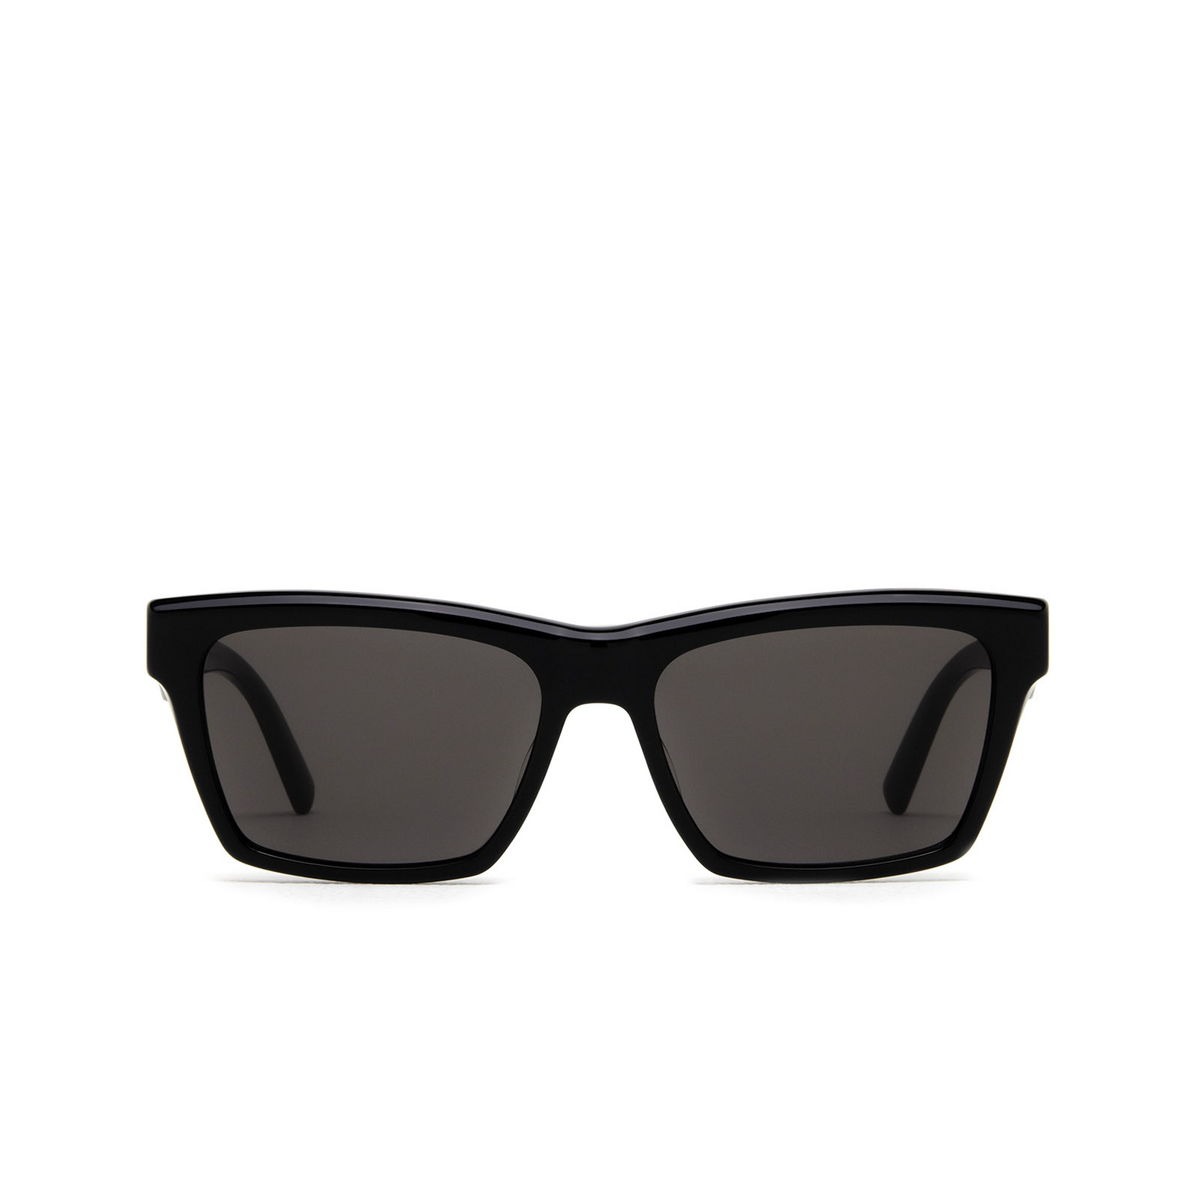 Saint Laurent® Rectangle Sunglasses: SL M104 color Black 002 - front view.